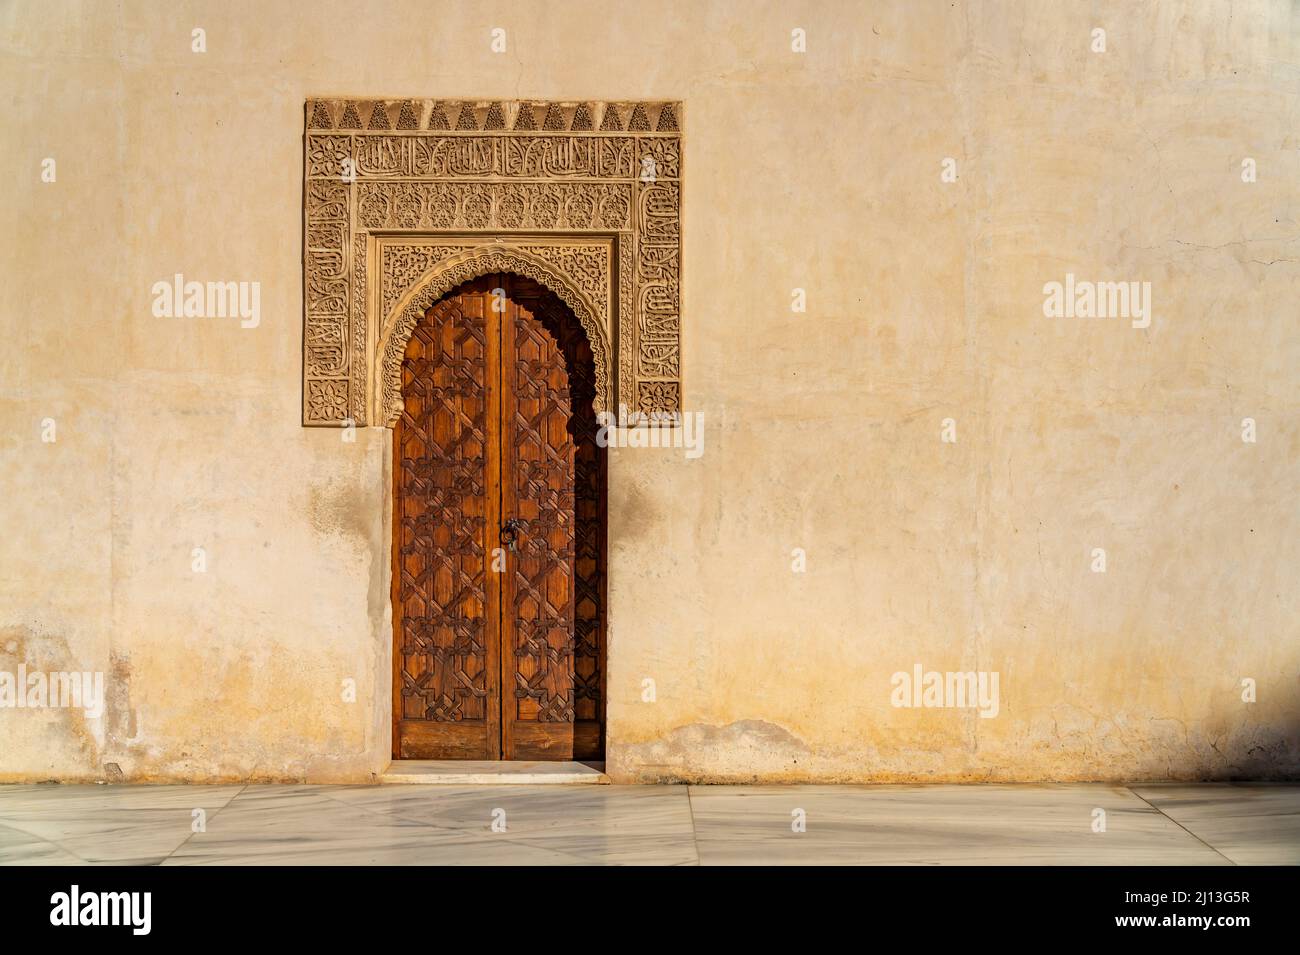 Tür im Myrtenhof, Welterbe Alhambra a Granada, Andalusia, spagnolo | Corte della porta Myrtles, patrimonio mondiale dell'Alhambra a Granada, Andalusia, SPAI Foto Stock